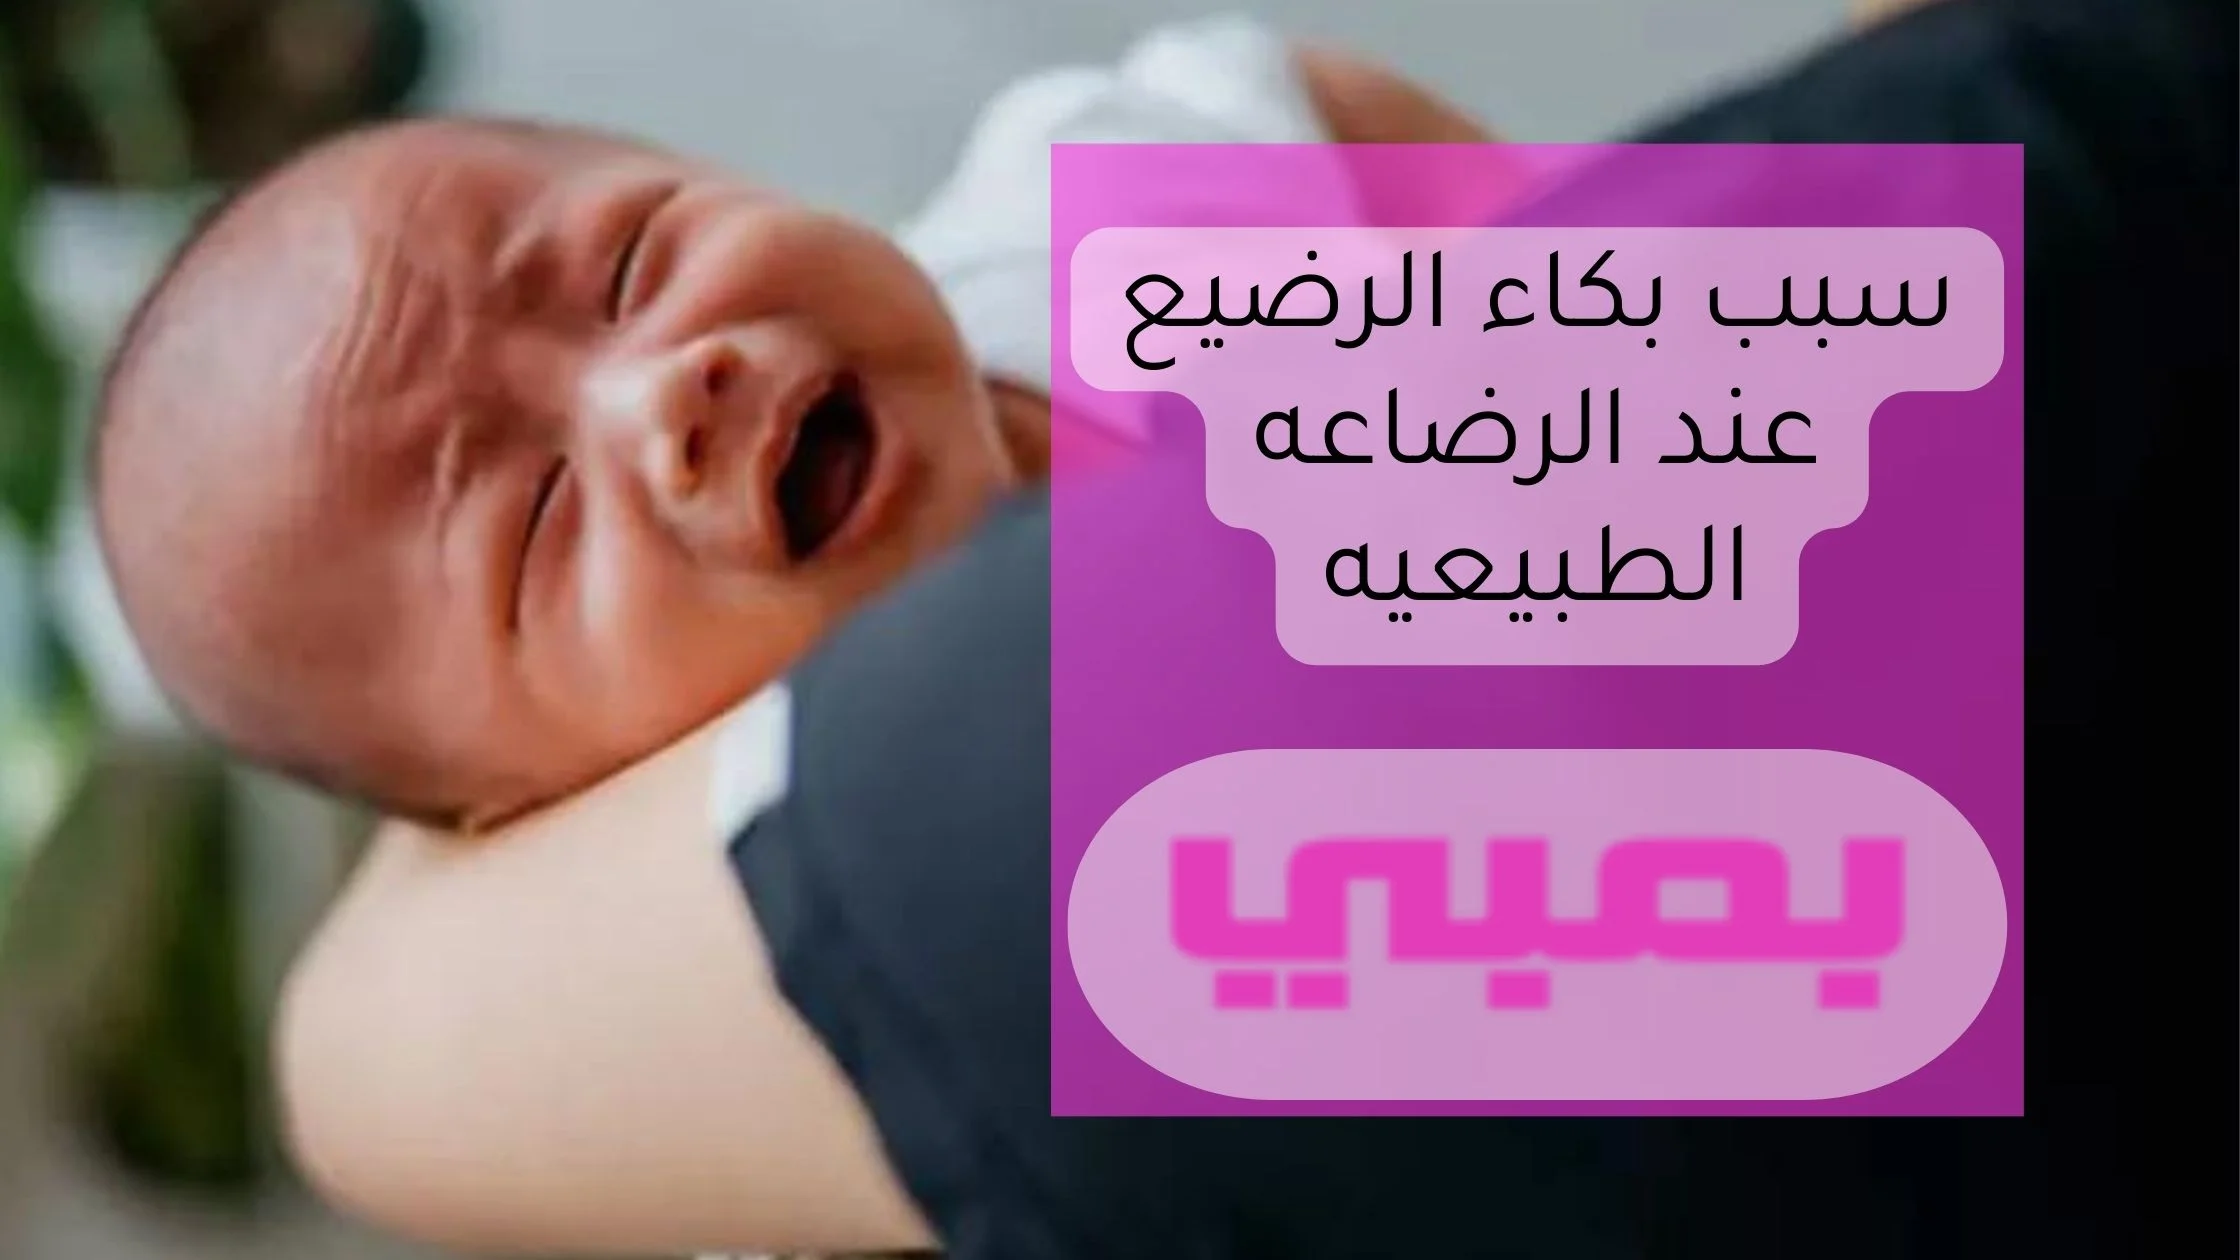 سبب بكاء الرضيع عند الرضاعه الطبيعيه